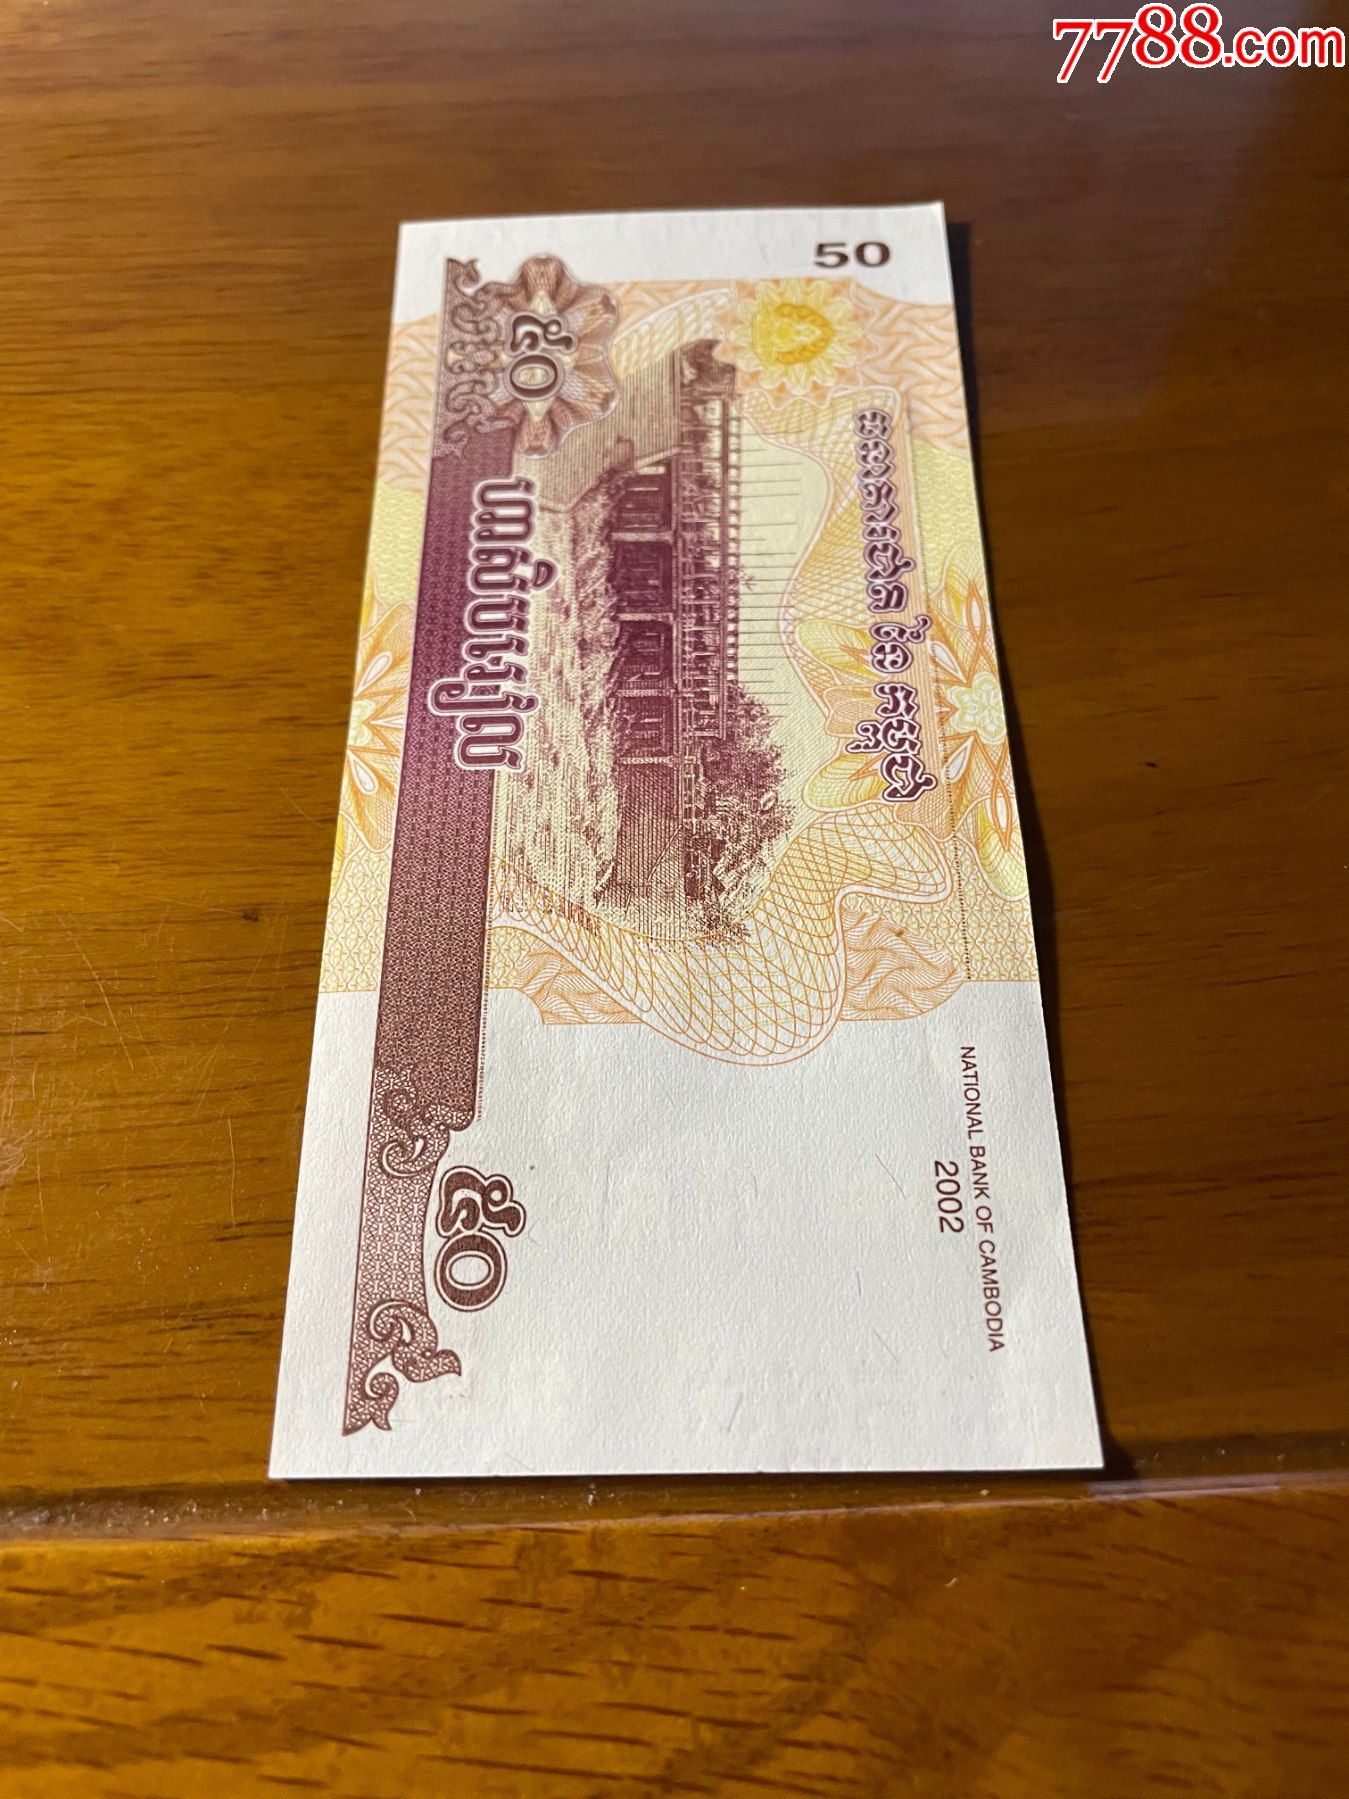 2002年版柬埔寨50元纸币